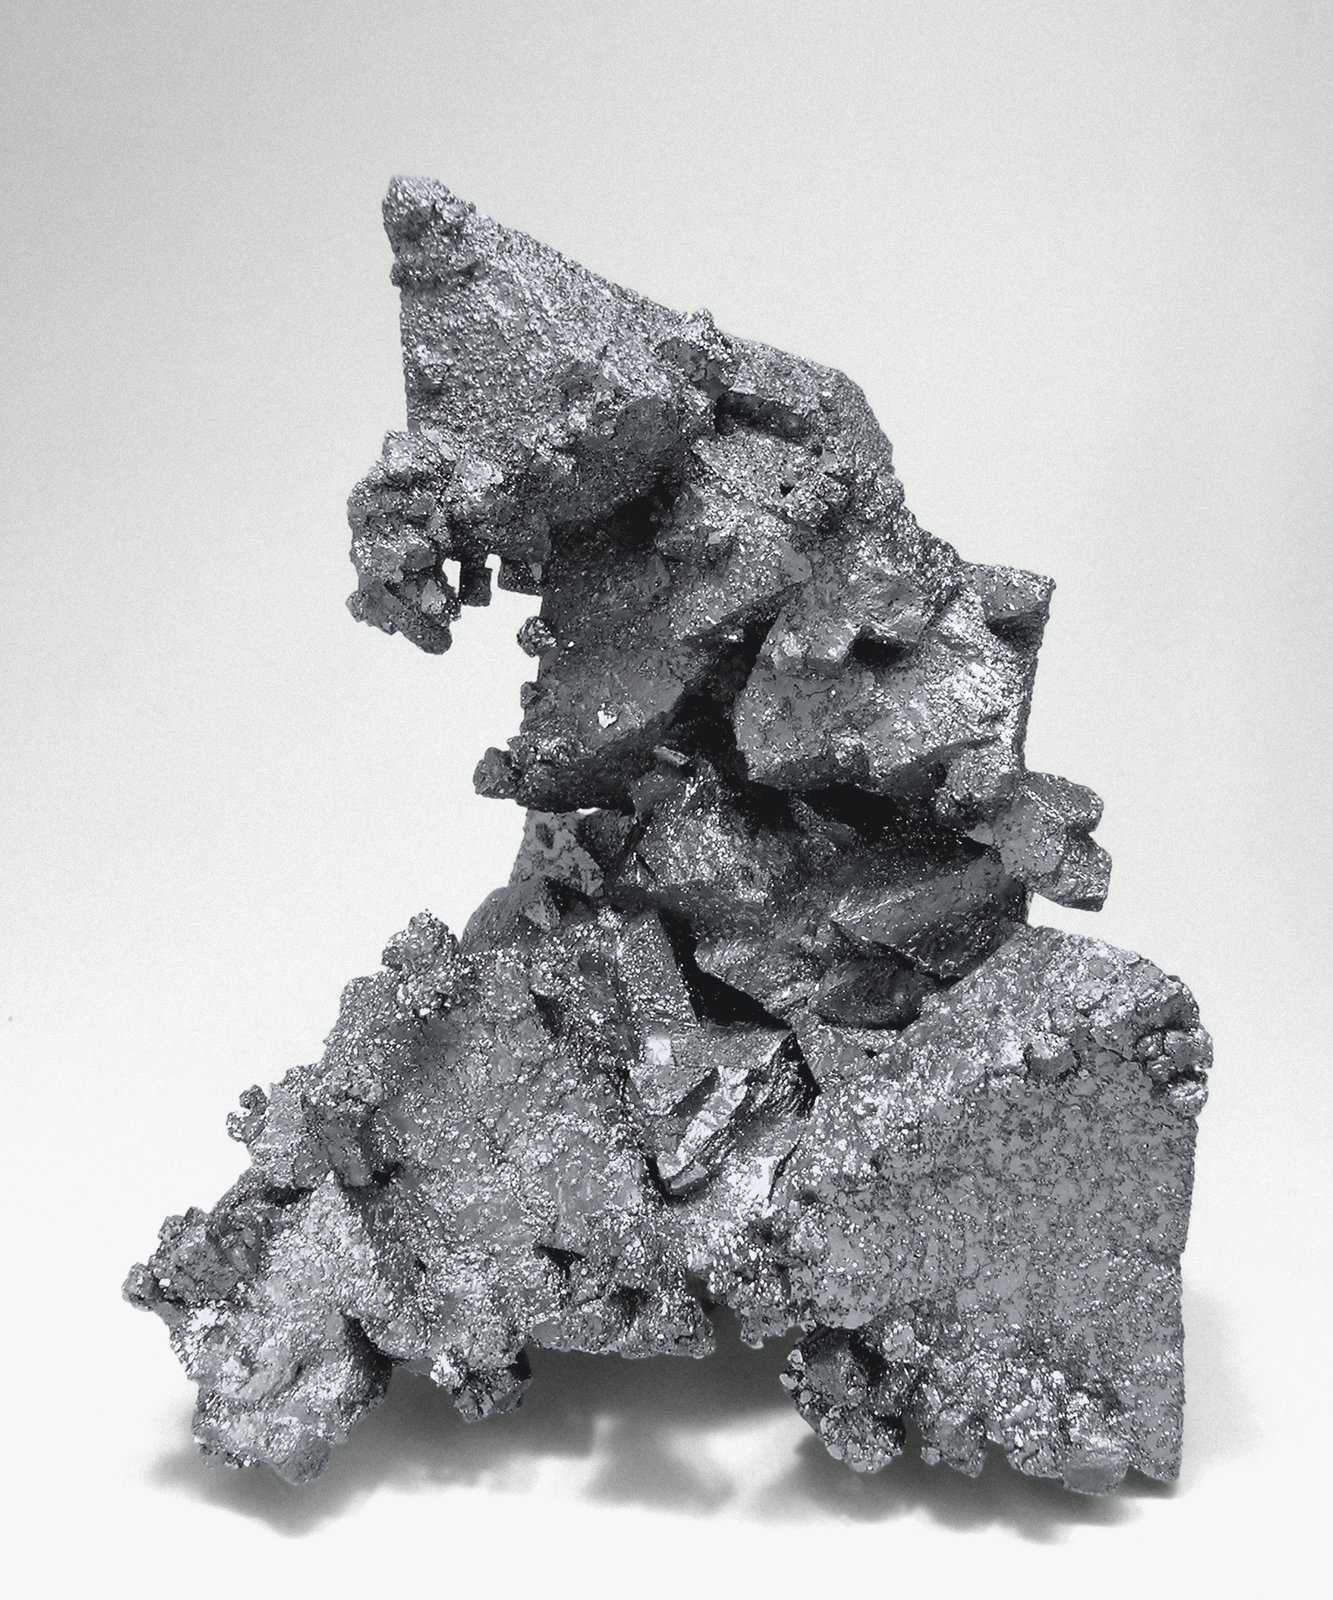 specimens/s_imagesM5/Hematite_Martite-ET96M5s.jpg